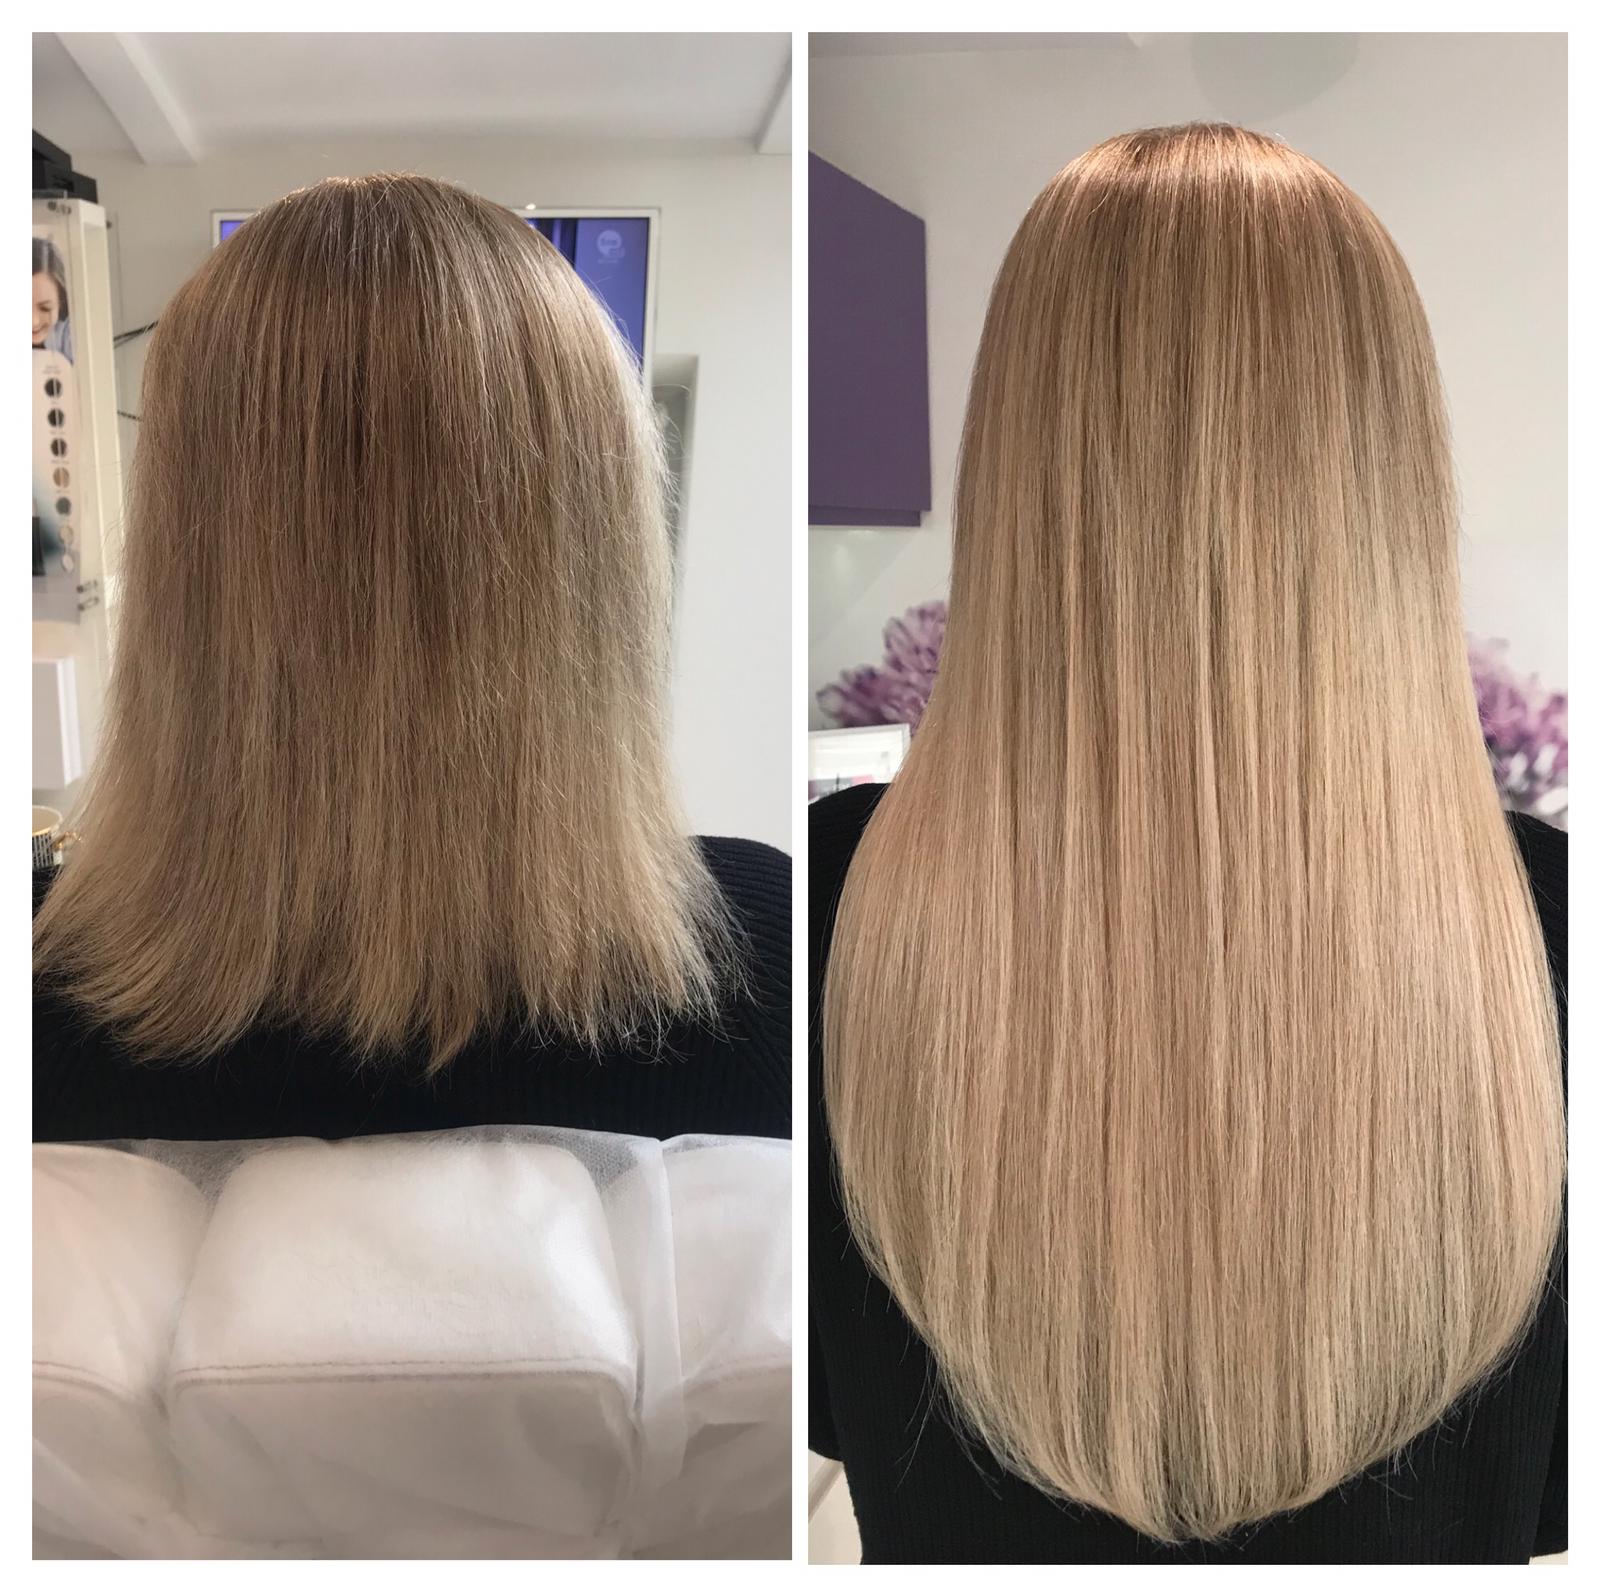 Blond włosy przed i po zabiegu wykonanym metodą Airtouch